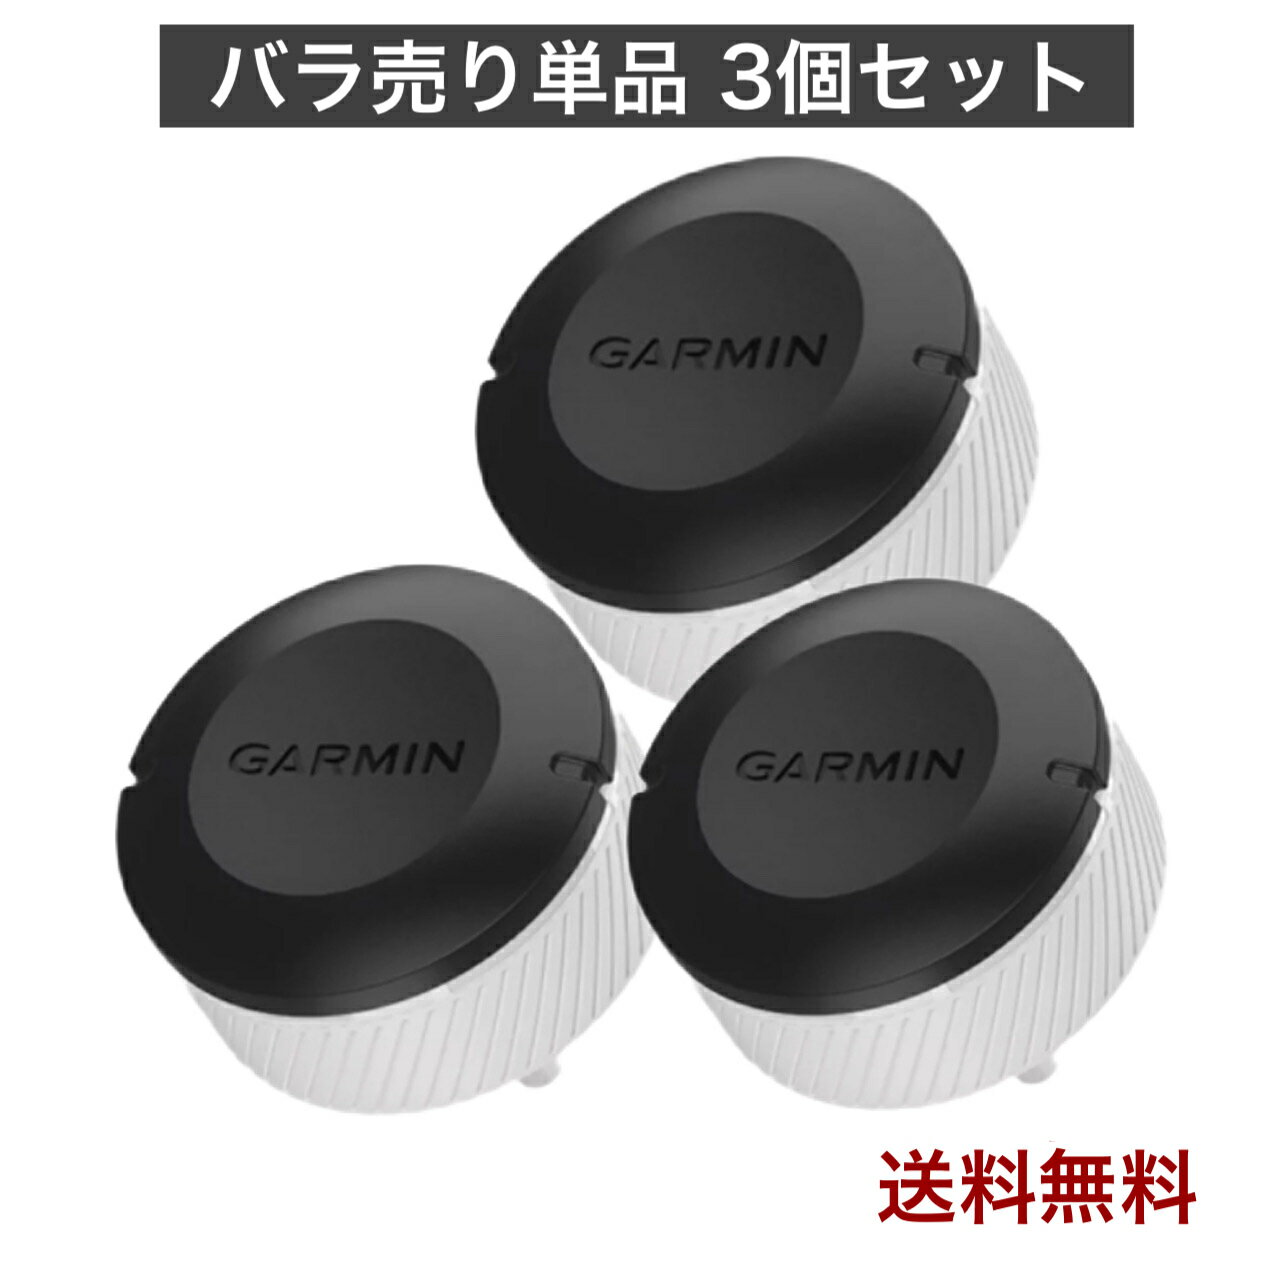 ガーミン CT10 Garmin Approach アプローチ ゴルフ スイング 3個セット バラ売り 複数購入可 1